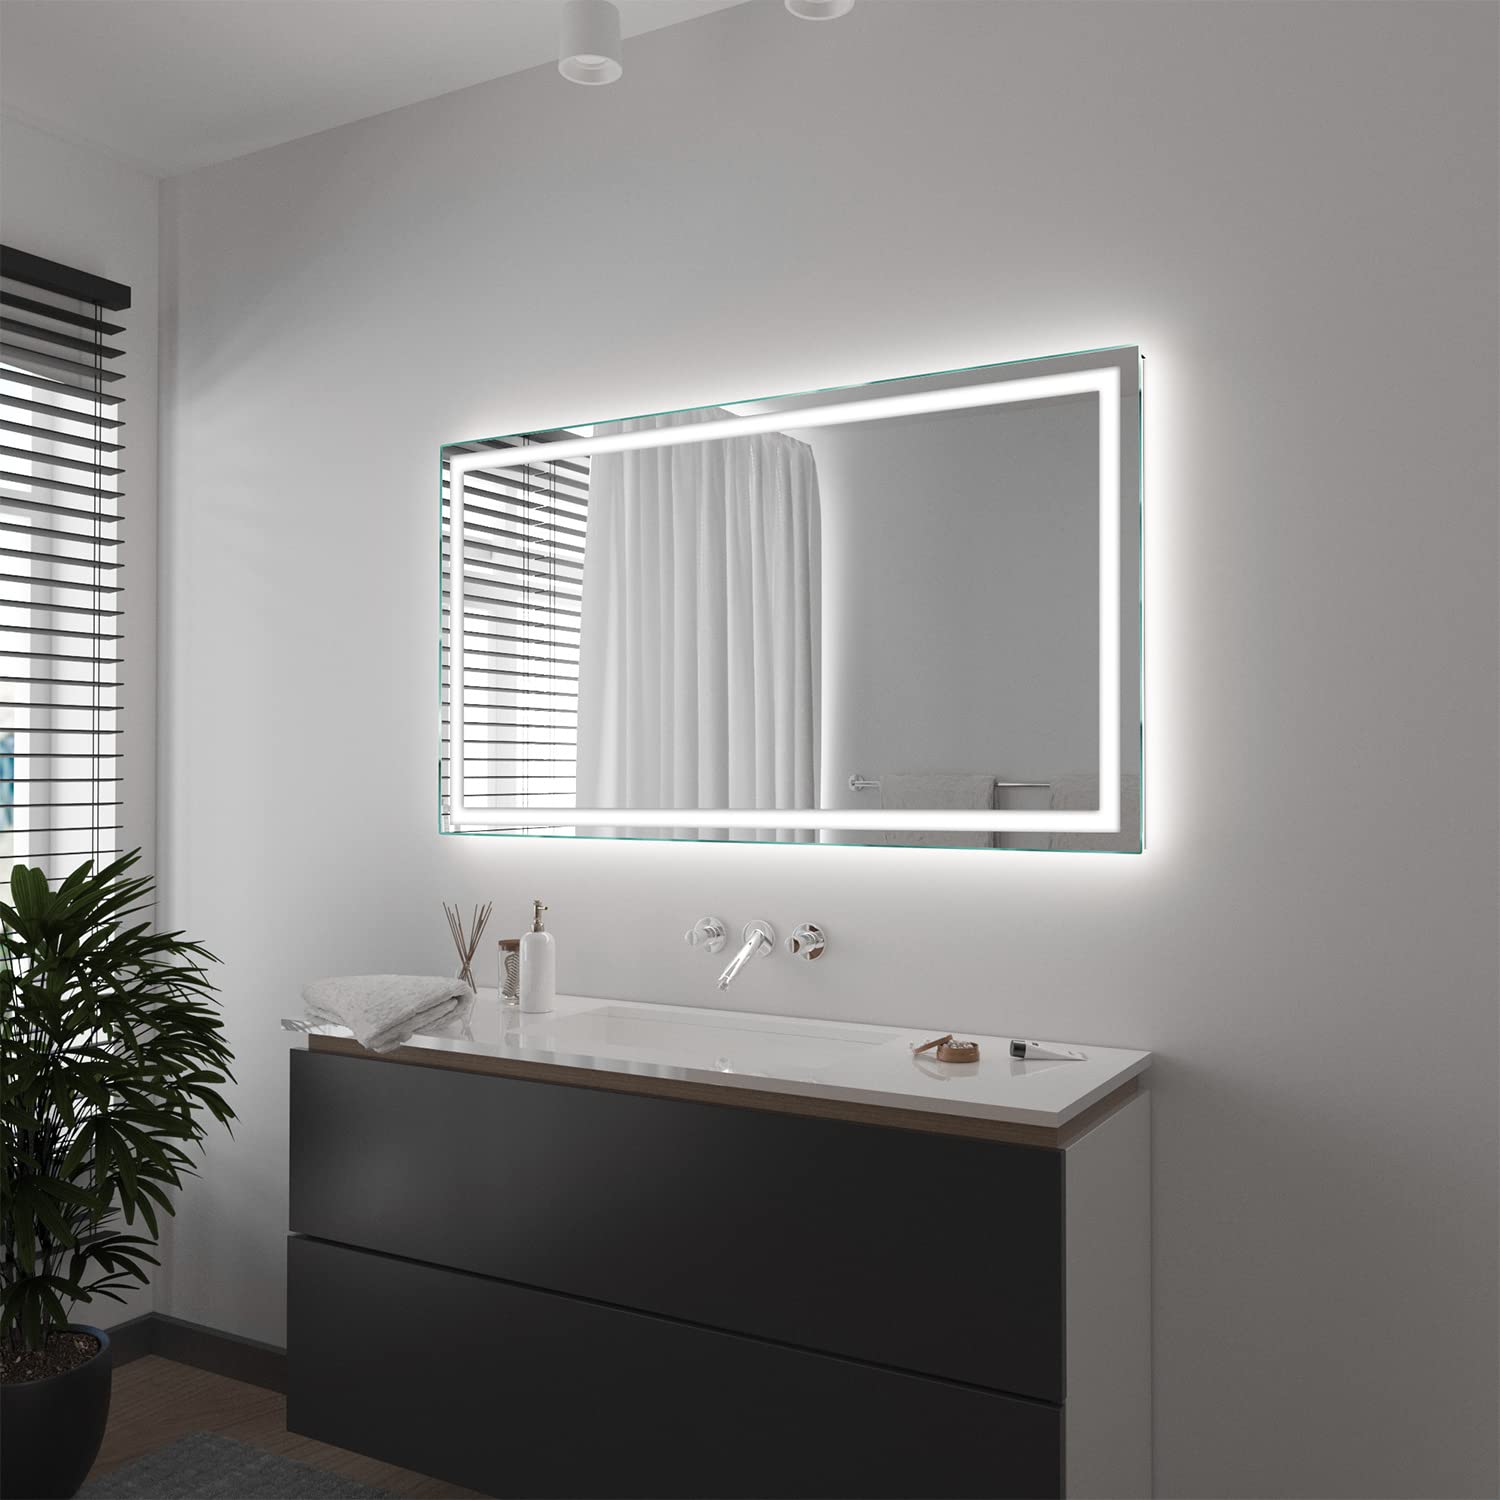 SARAR Wandspiegel mit rundum LED-Beleuchtung 100x80 cm Made in Germany Toulon eckiger Badspiegel Spiegel mit Beleuchtung Badezimmerspiegel